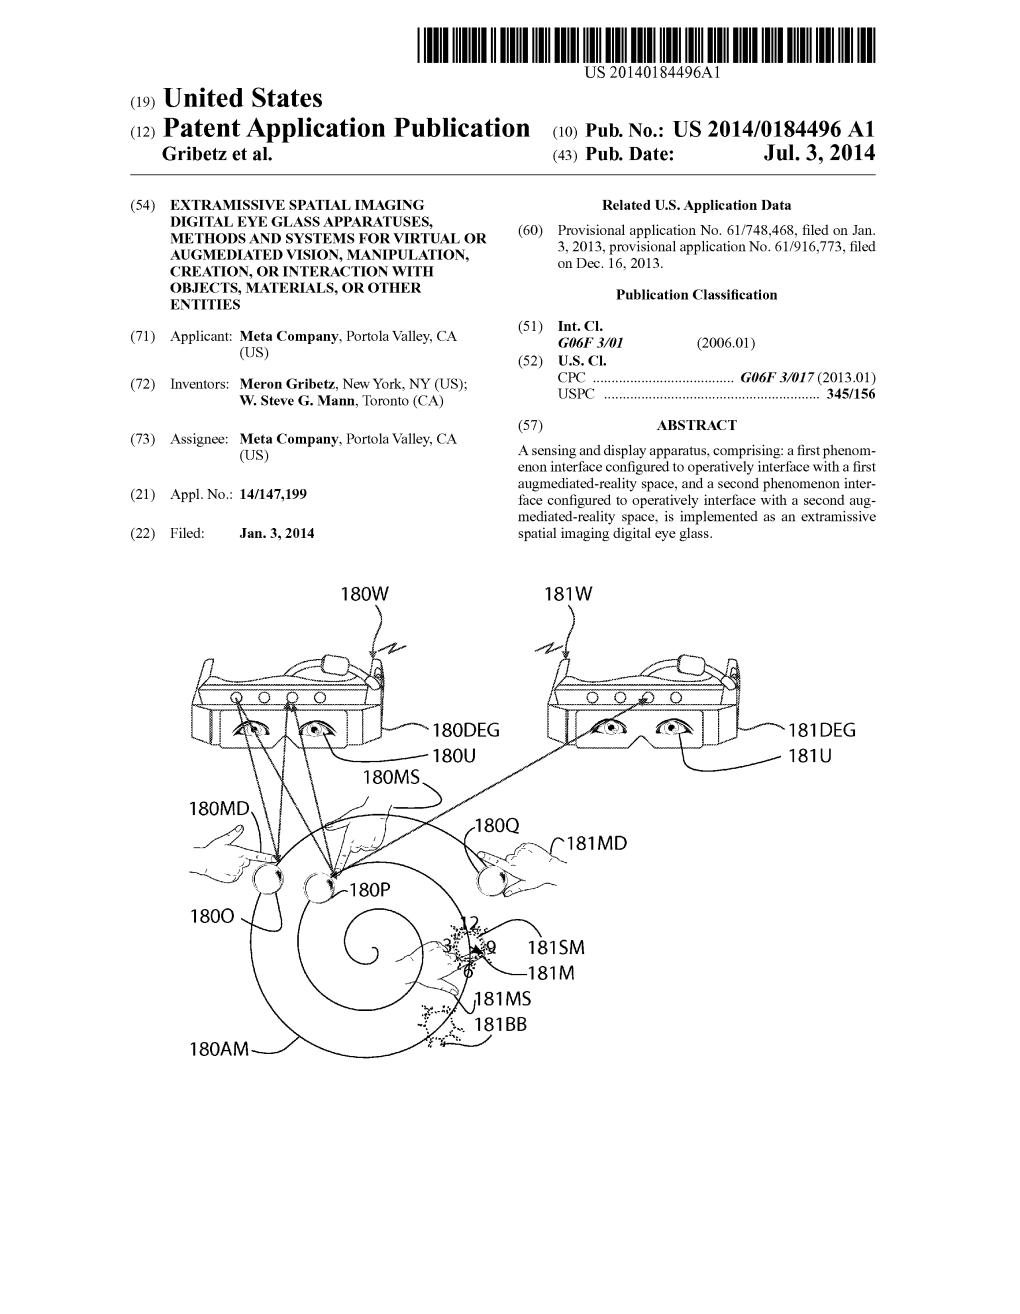 (12) Patent Application Publication (10) Pub. No.: US 2014/0184496 A1 Gribetz Et Al